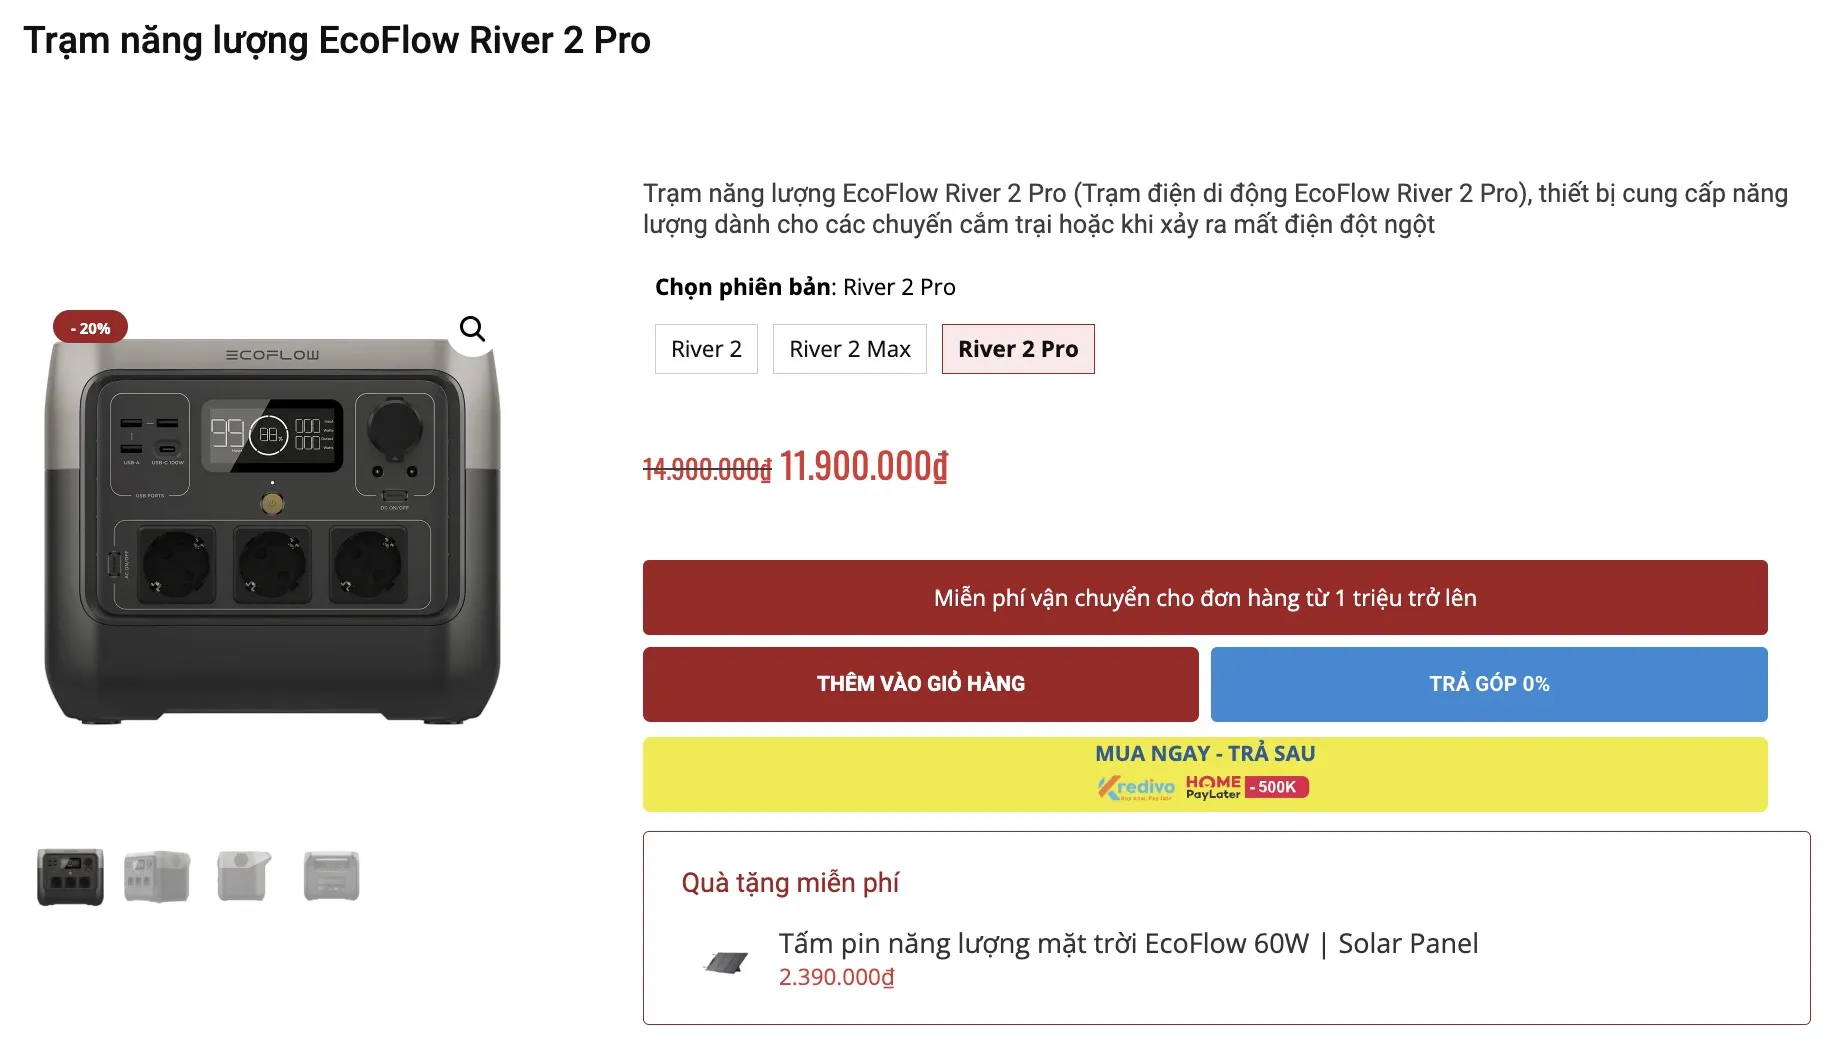 Ưu đãi mua trạm sạc EcoFlow River 2 Pro nhận tấm pin năng lượng 60W độc quyền tại WinWinStore